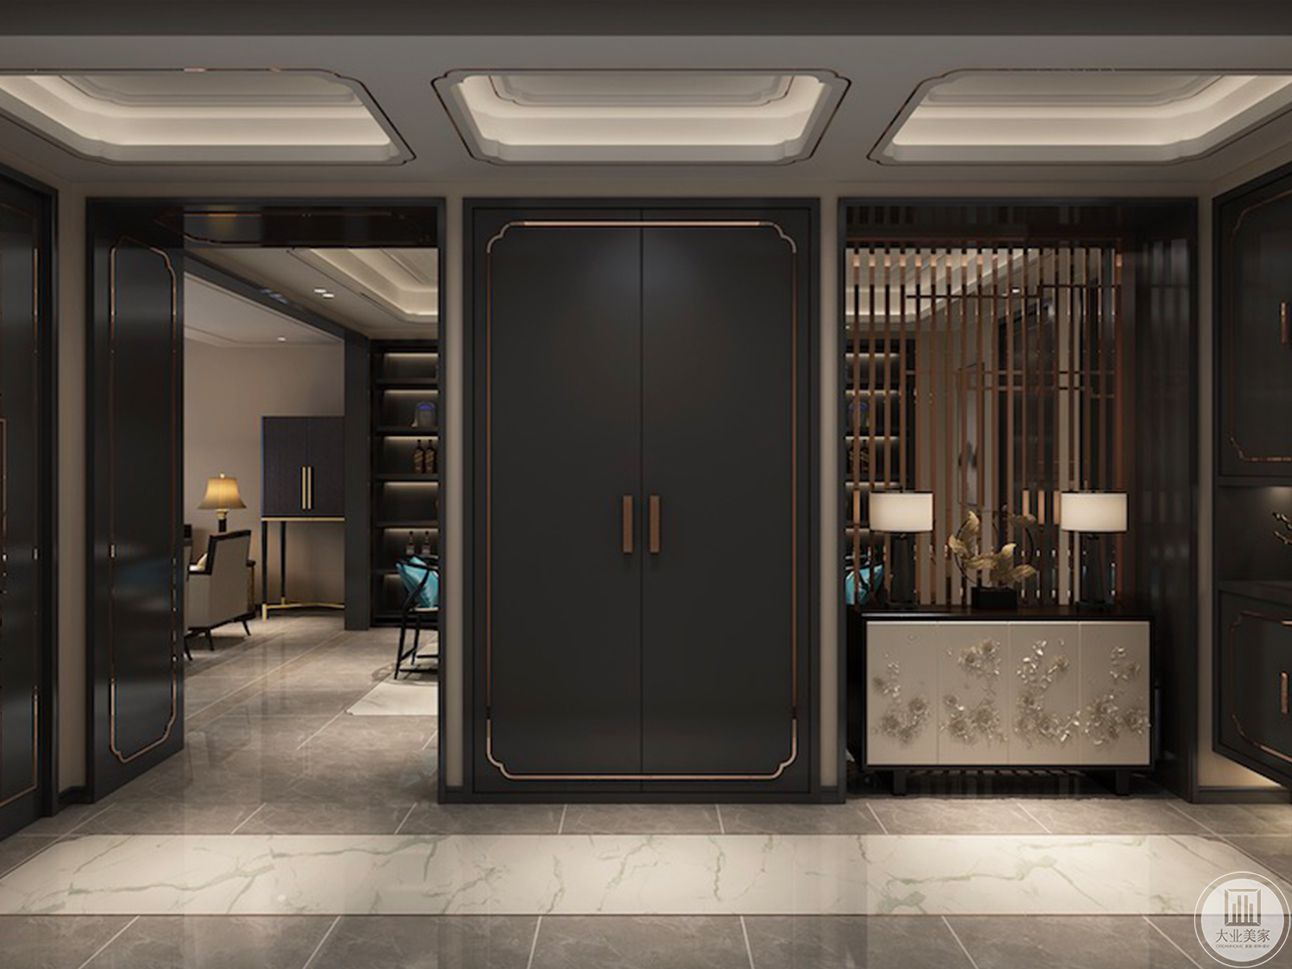 门厅空间沿用古色古香的中式元素和简单素雅的现代线条自然衔接，设计上令空间的现代气息与东方韵味共存且维持平衡，打造质感十足的室内氛围。